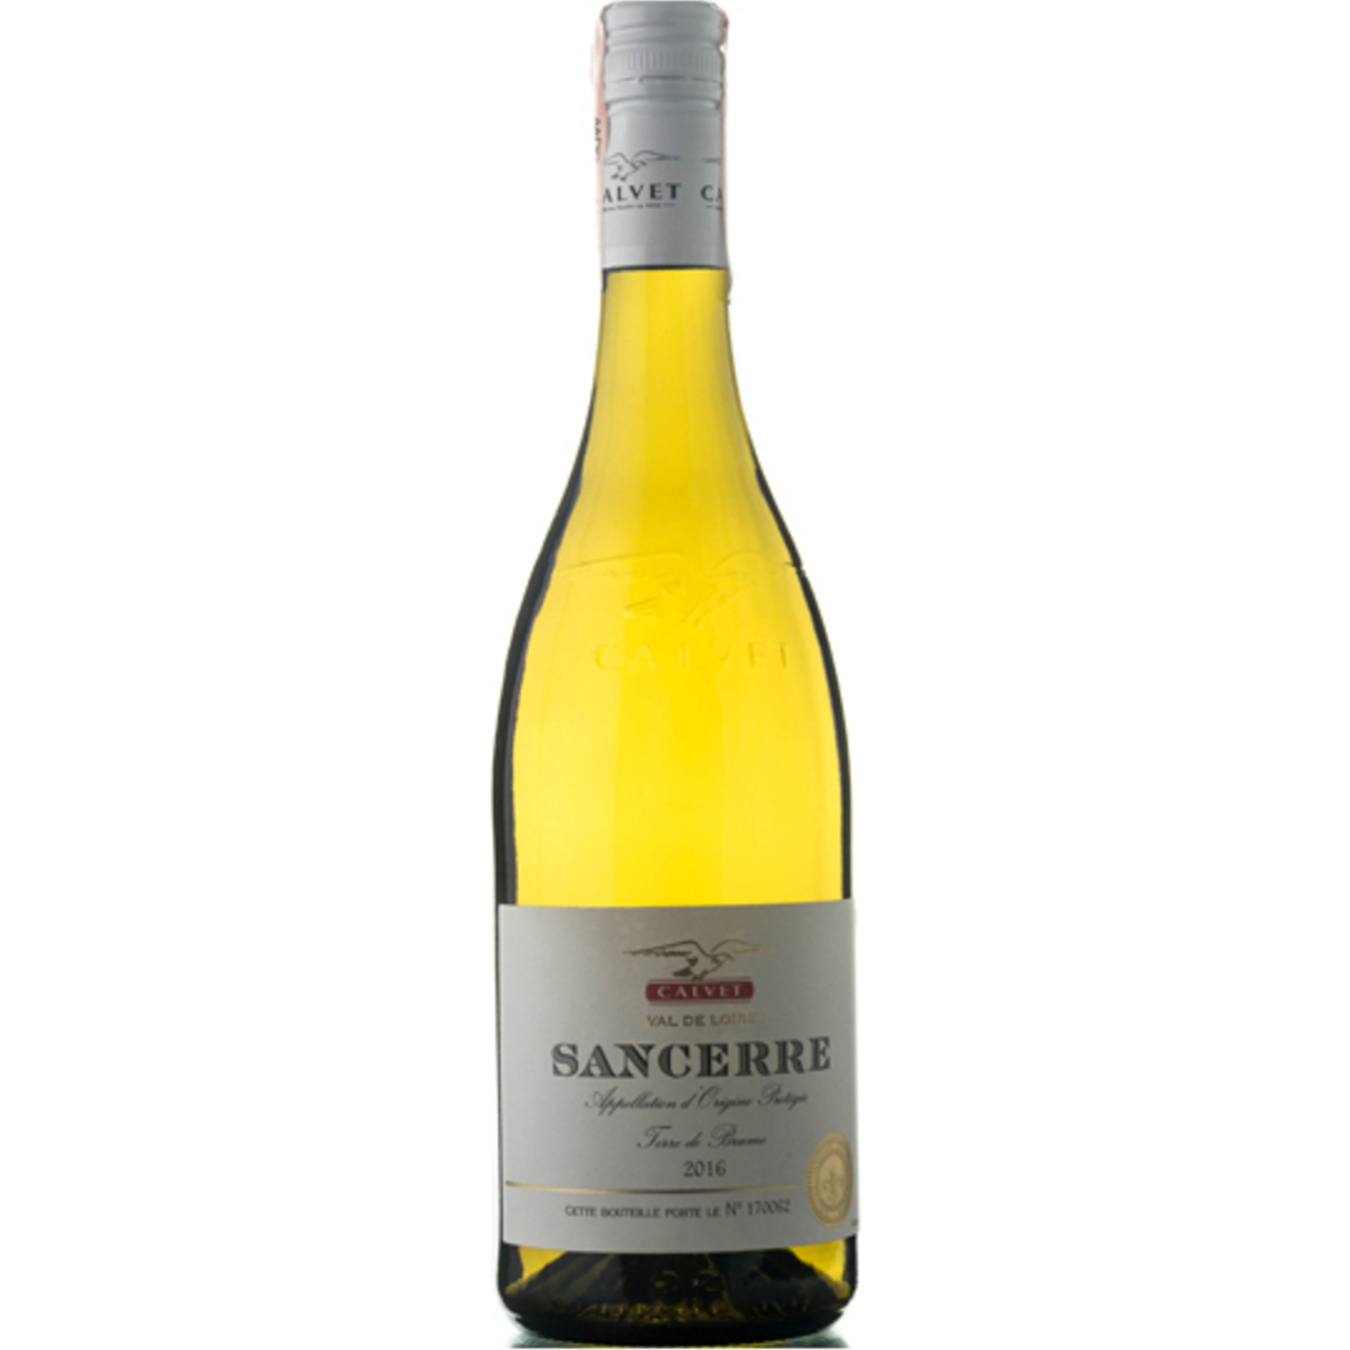 Calvet Sancerre Vin de Loir AOP white dry wine 12.5% 0.75l